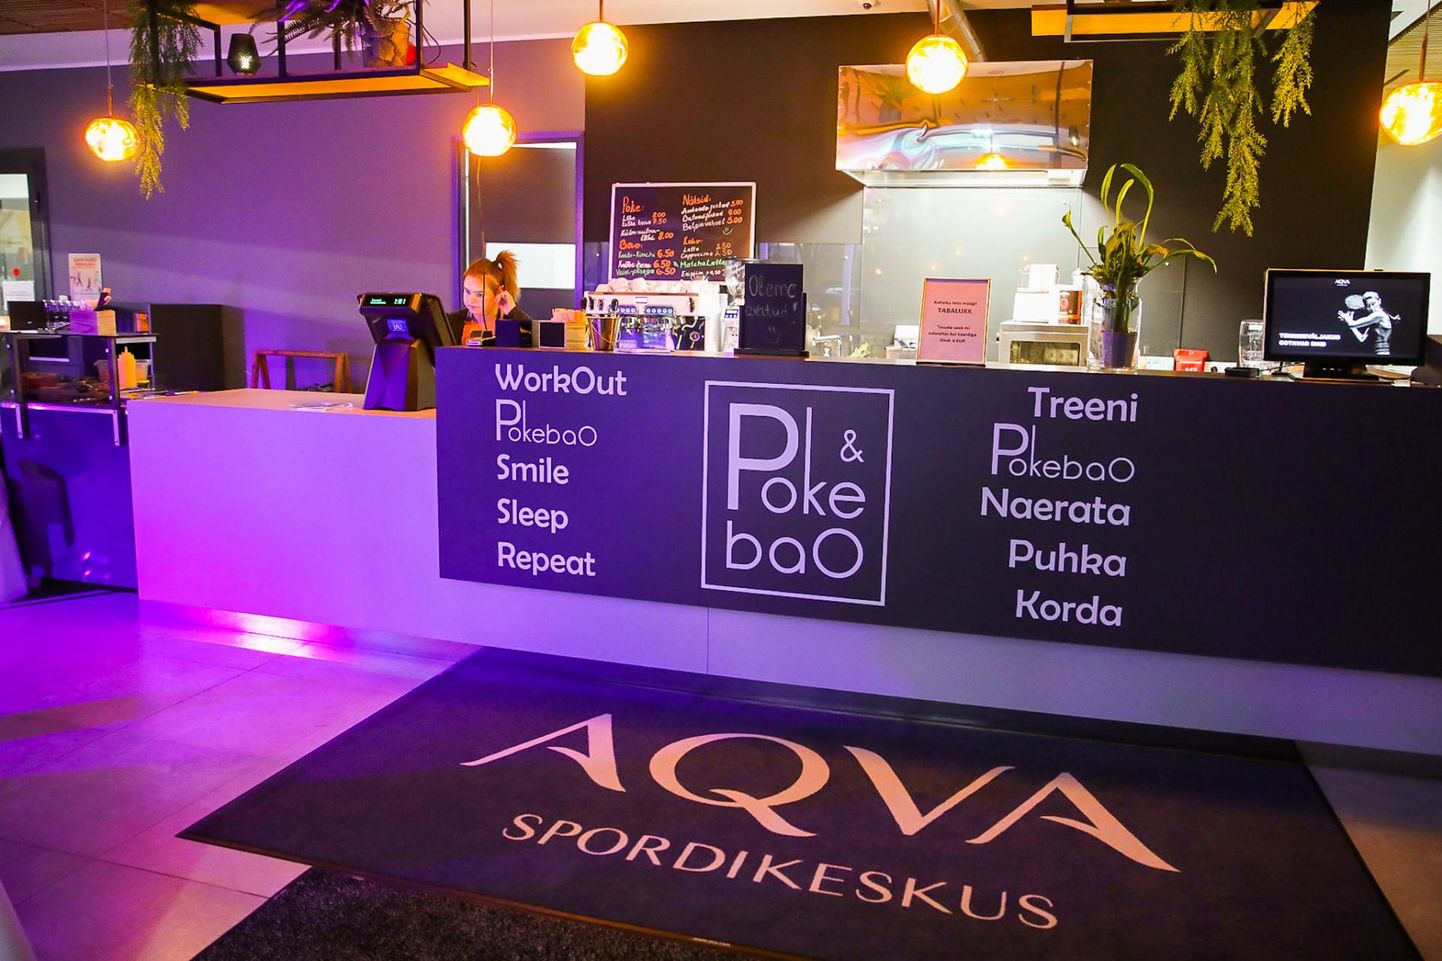 Aqva spordikeskuses on avatud uus kohvik Poke & Bao, mille menüü on siin kandis ainulaadne.